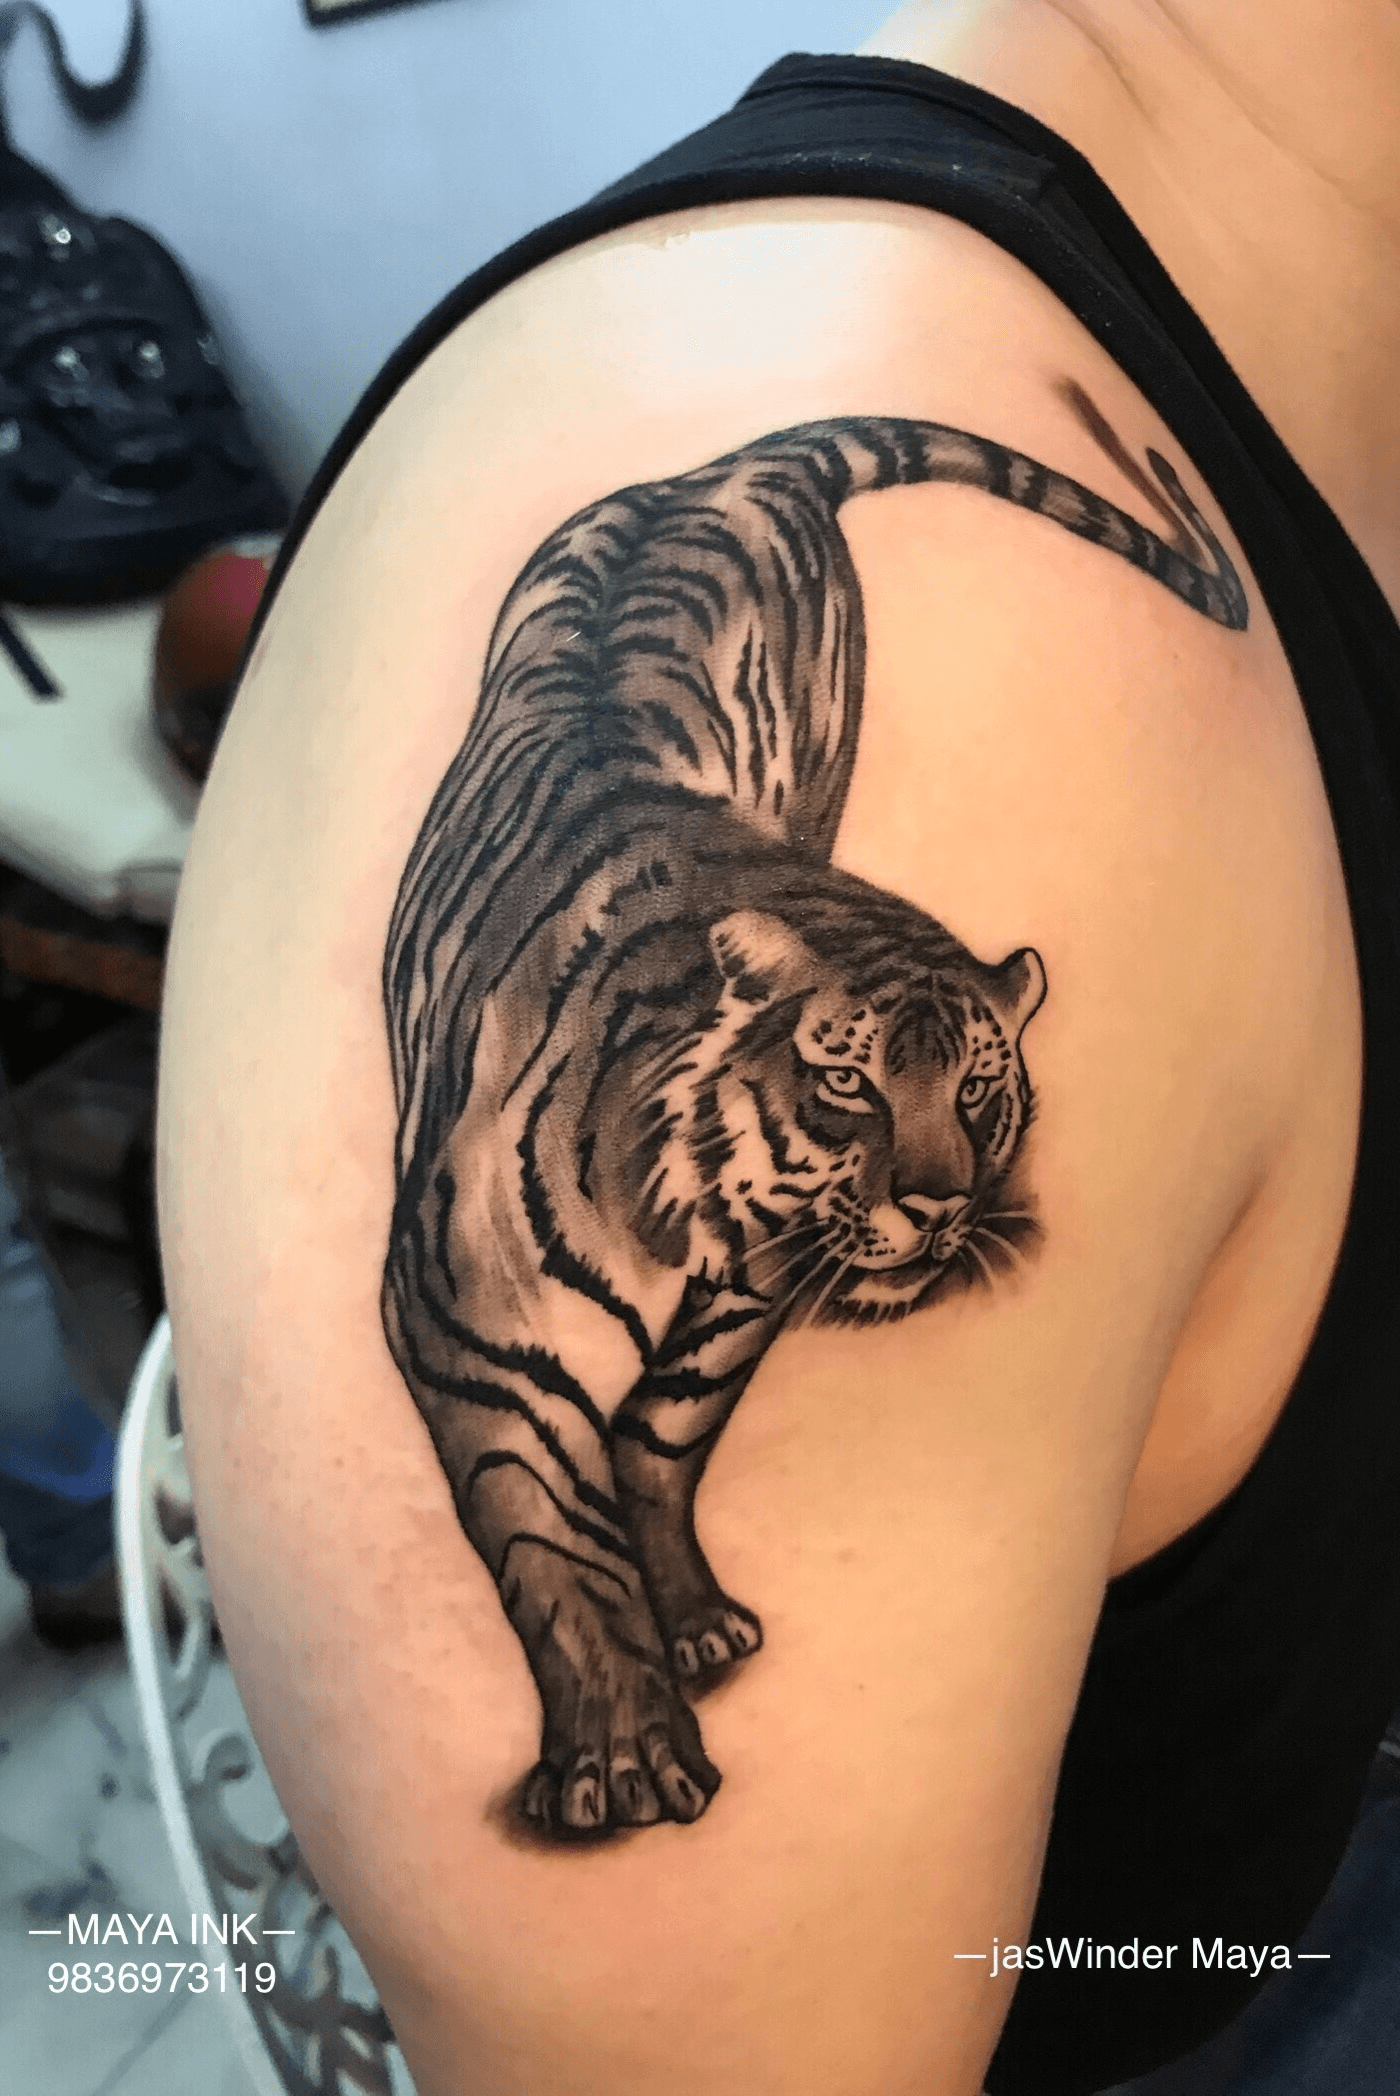 32 Cool Tiger Back Tattoos  Tattoo Designs  TattoosBagcom